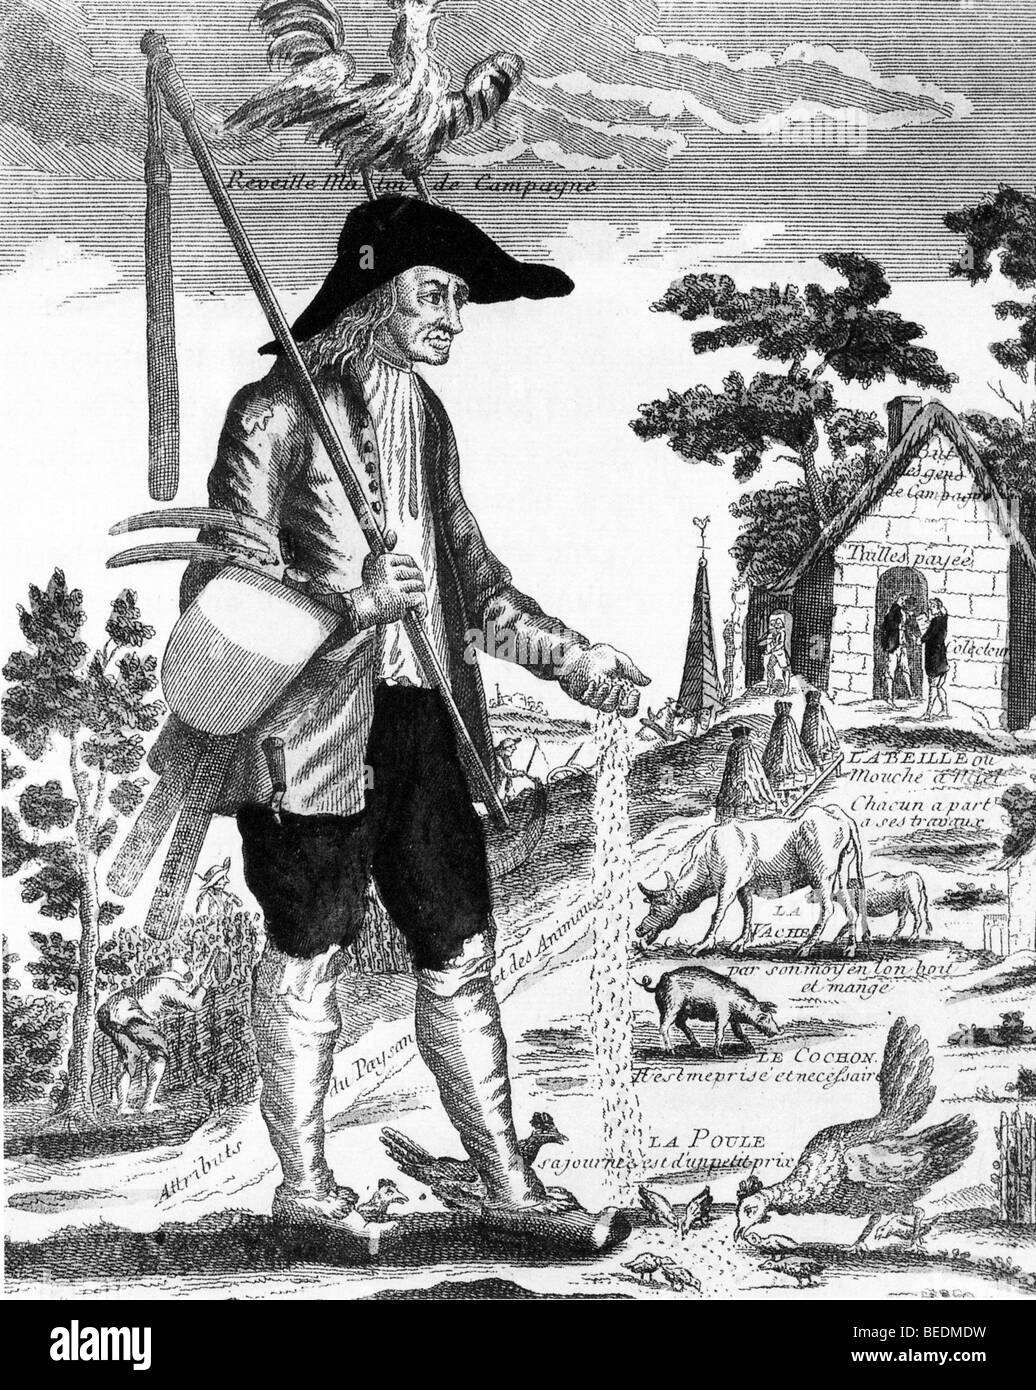 FRENCH PEASANT - XVIII secolo cartoon illustra i poveri le condizioni di vita e di lavoro degli agricoltori - vedere la descrizione riportata di seguito Foto Stock